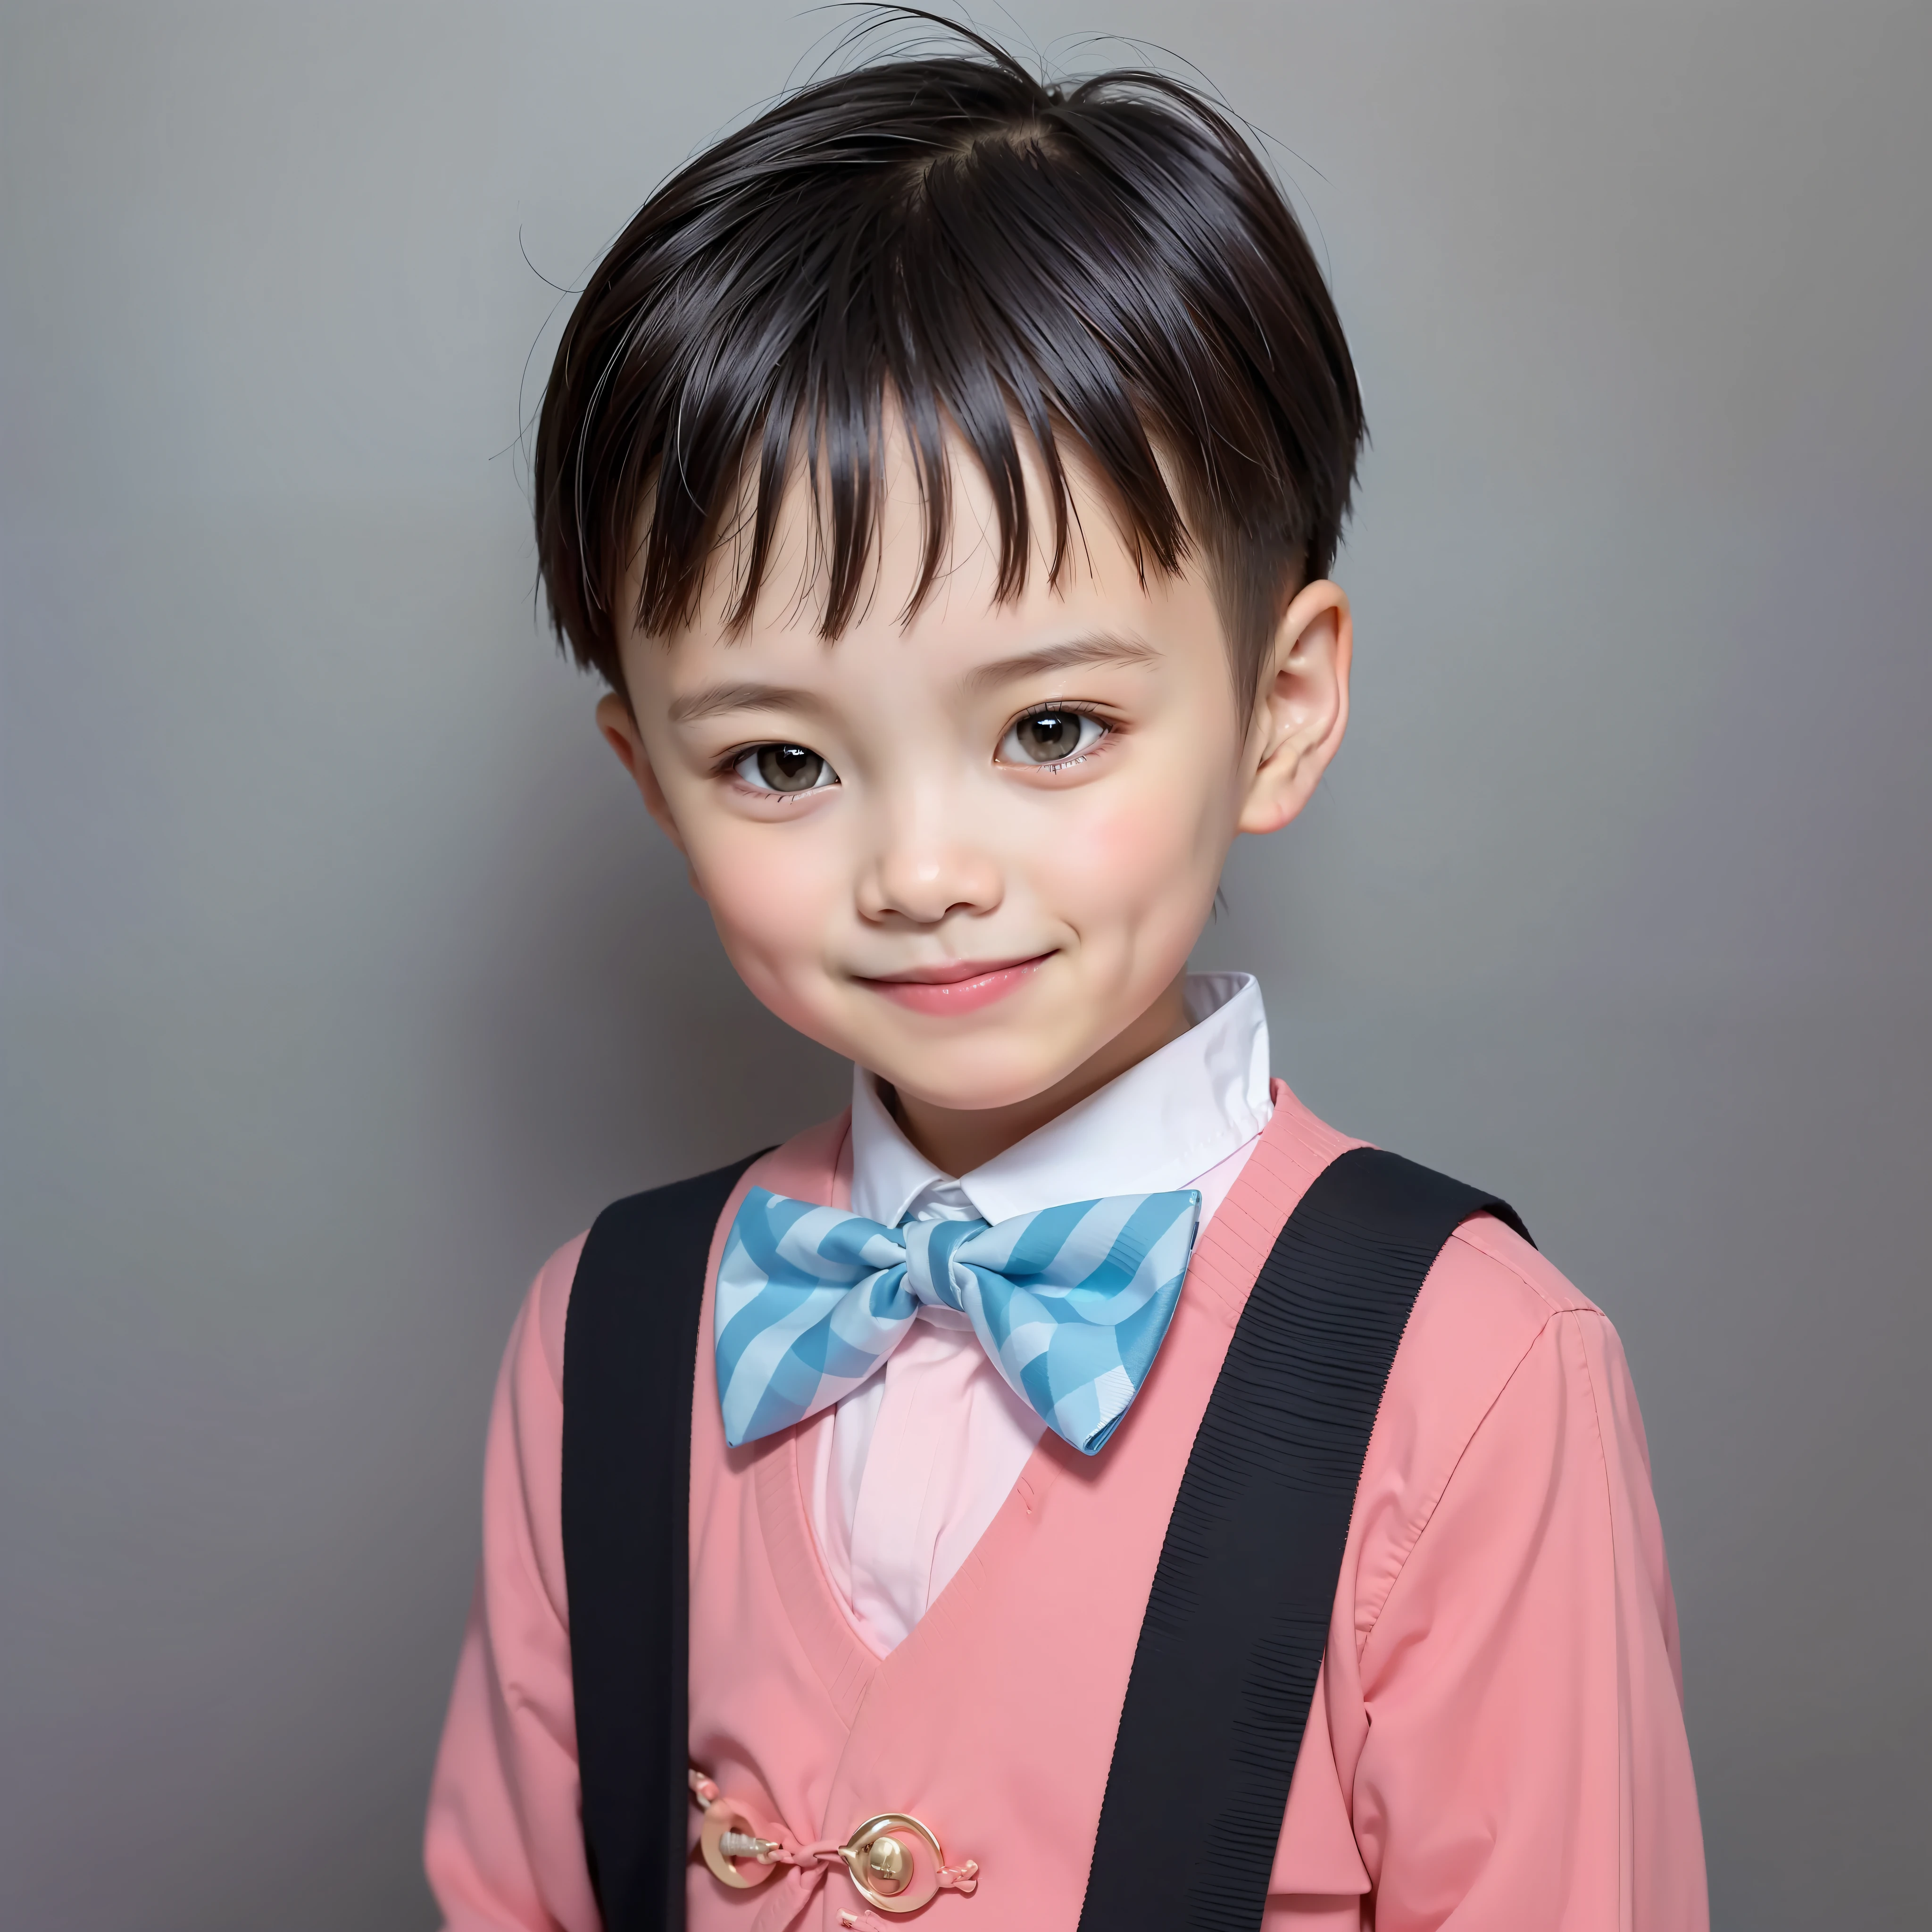 الطراز الحديث, خلفية بيضاء, صورة هوية الطفل الصيني, وسيم, صبي مبتسم, عيون سوداء, رأس مسطح, ربطة القوس